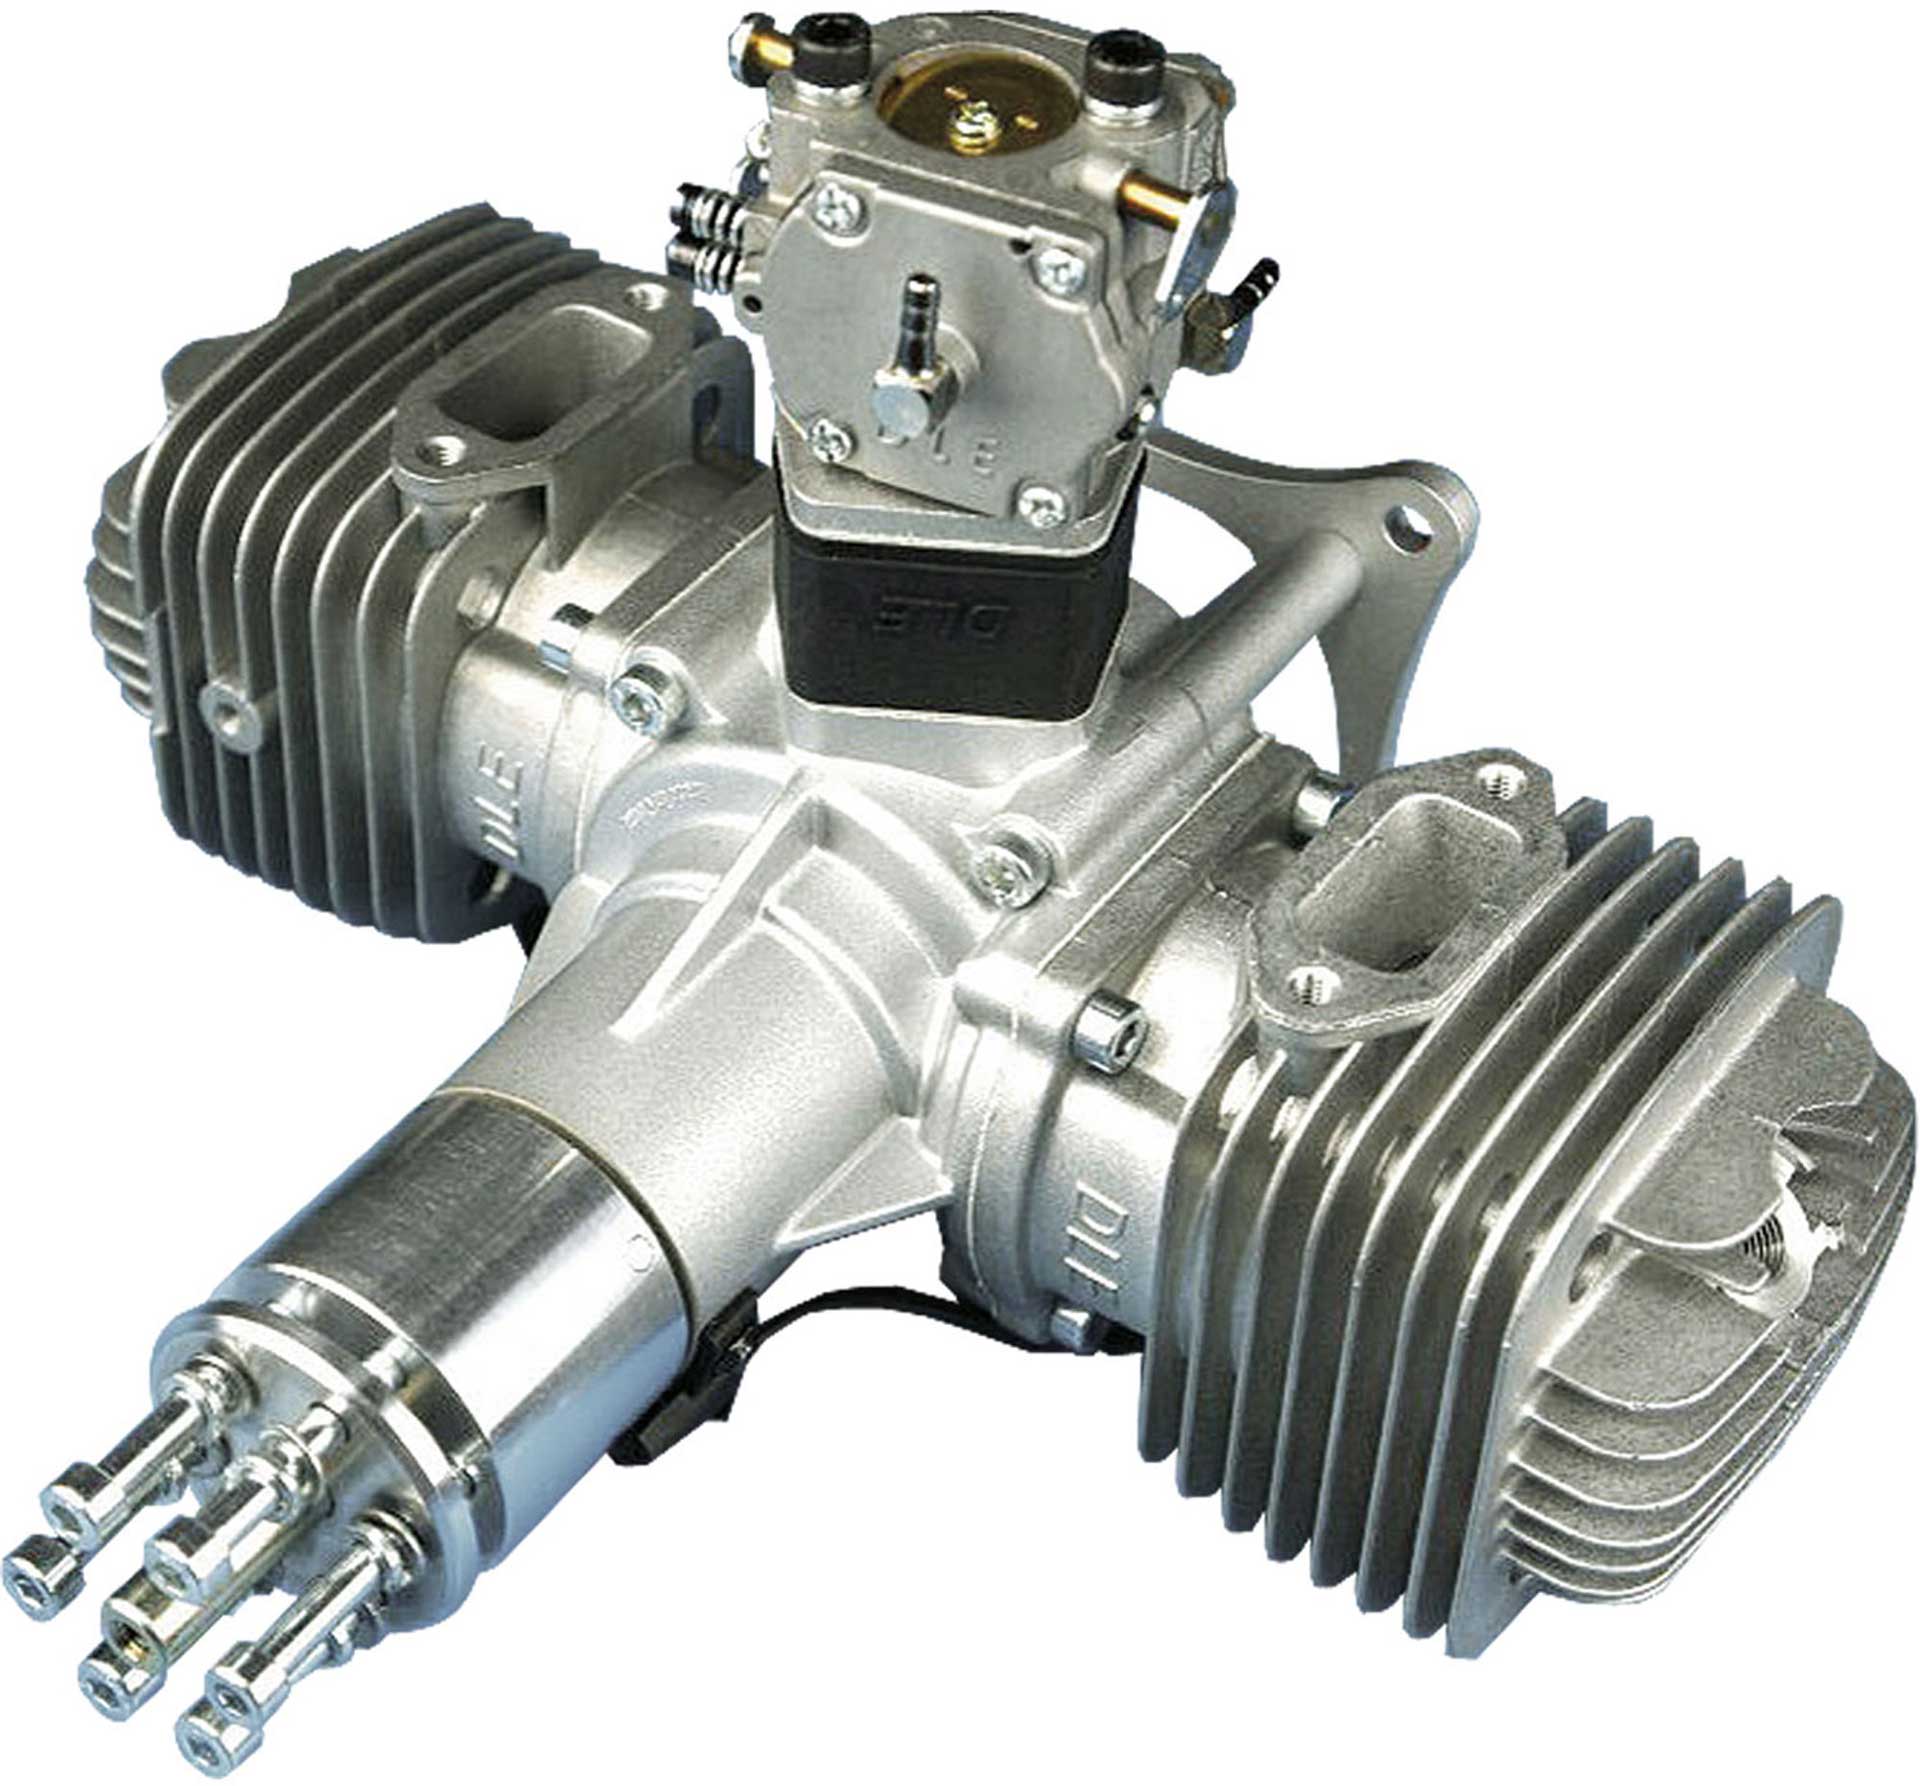 DLE Engines DLE 120 2-Zylinder Benzin Motor "Original"